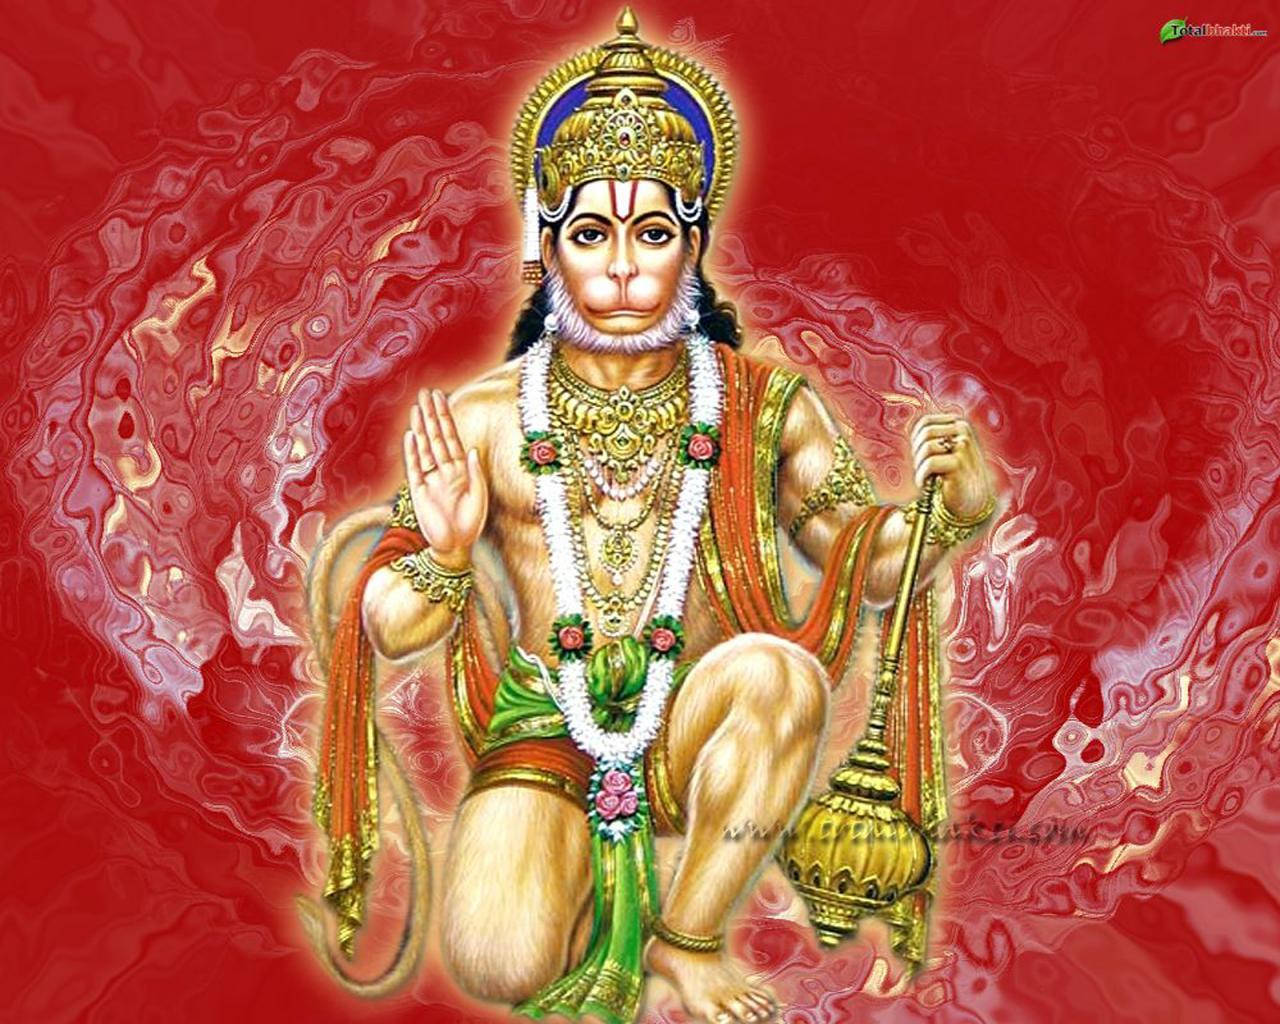 100+] Lord Hanuman 3d Wallpapers | Wallpapers.com